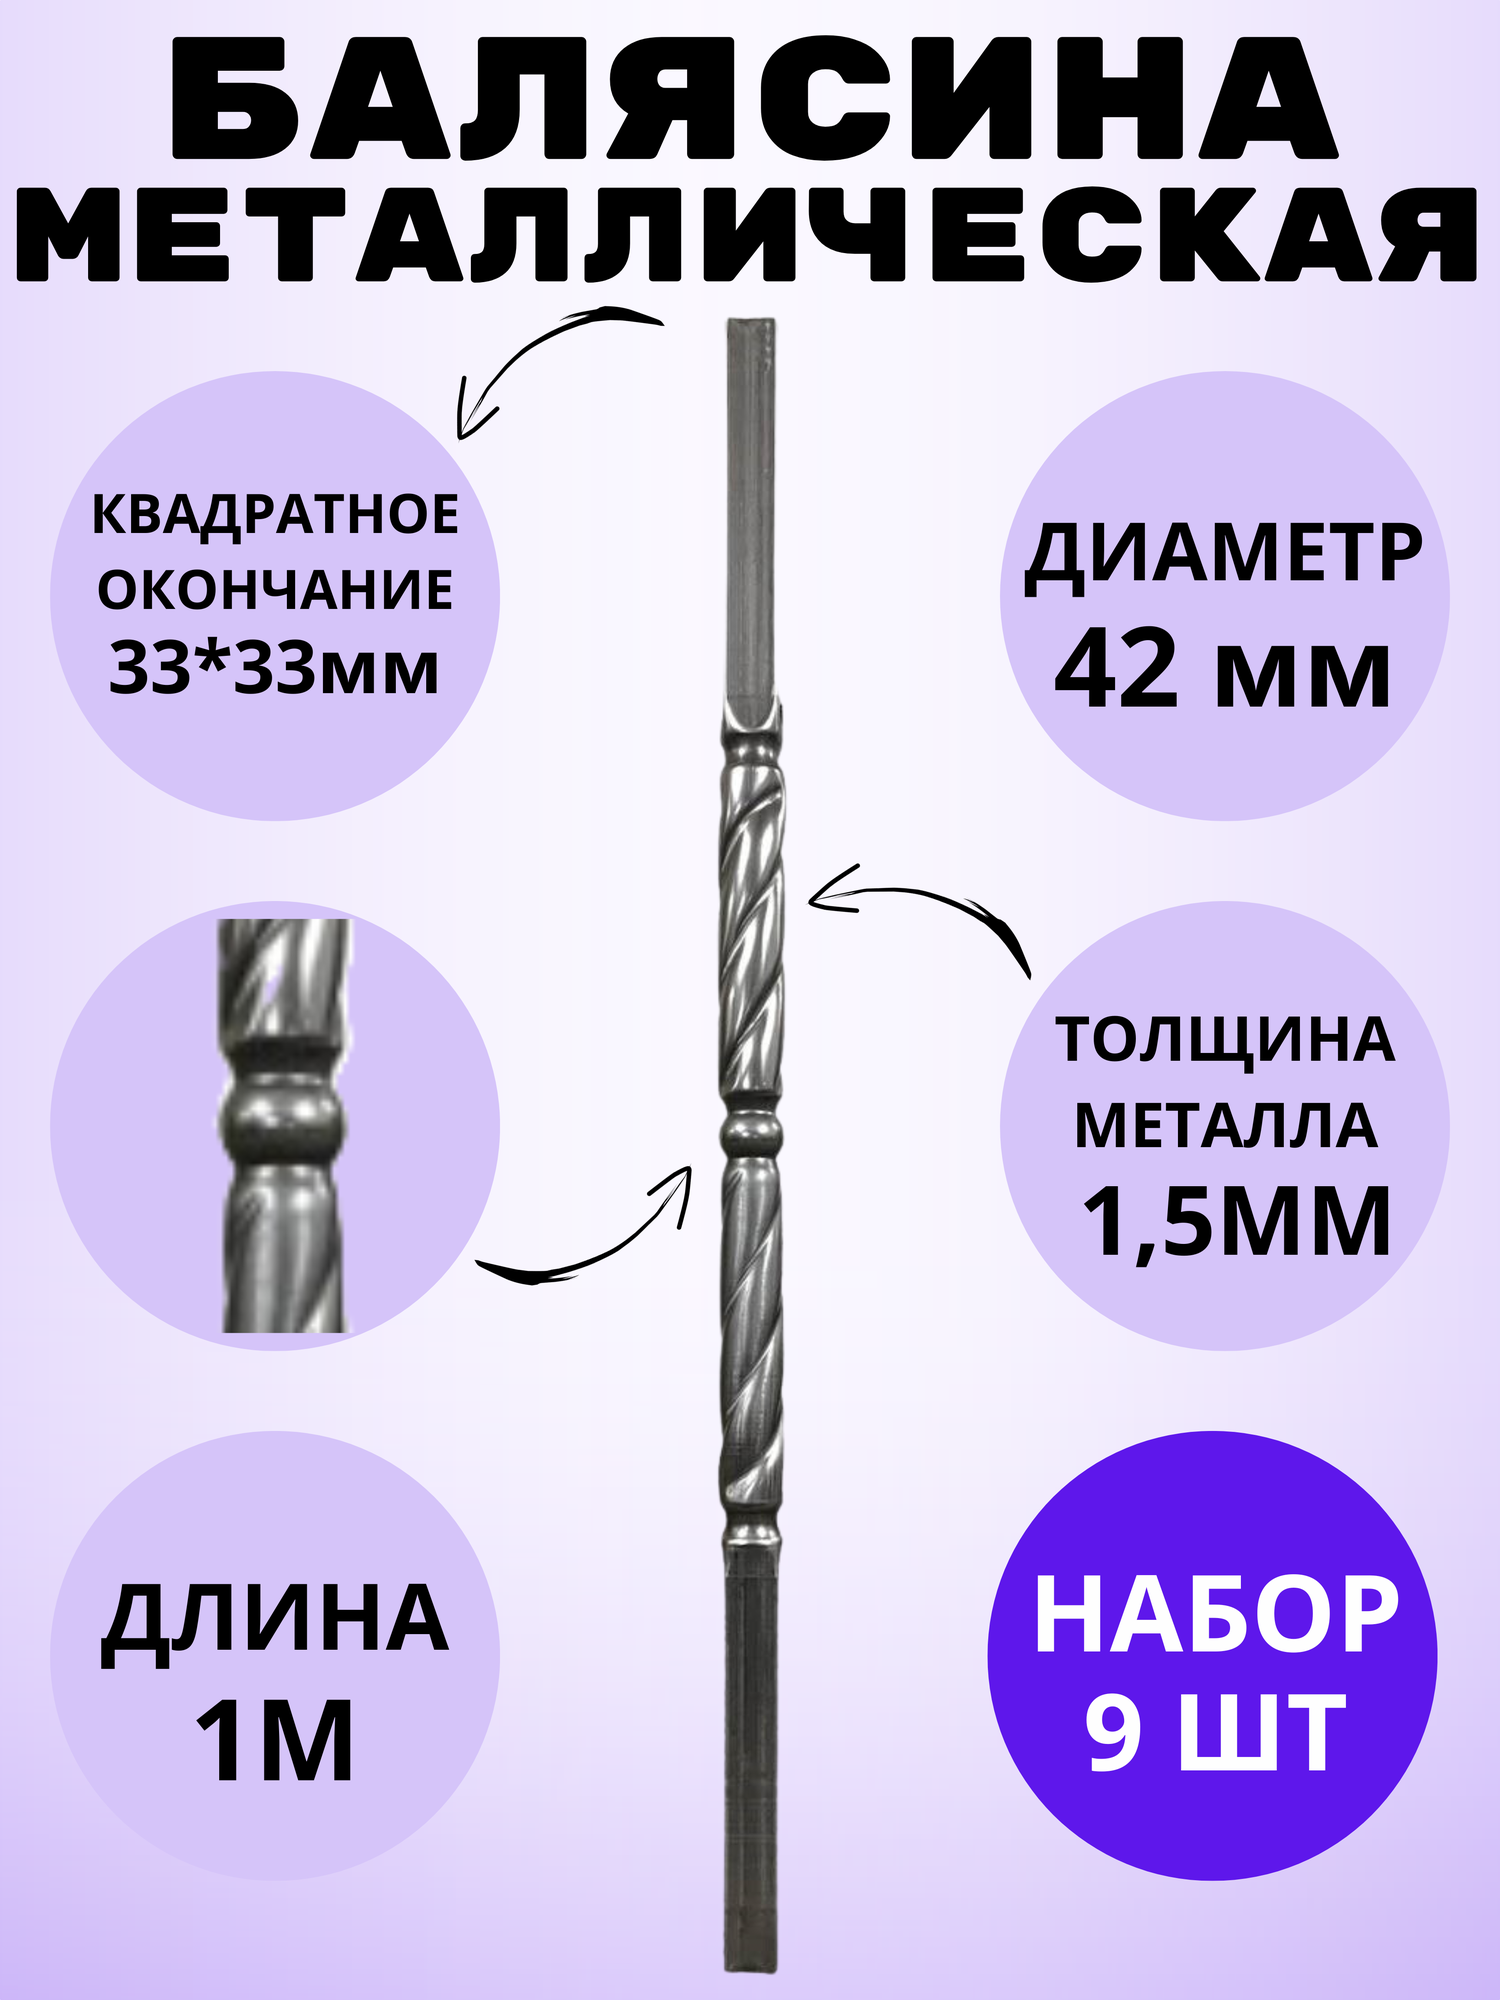 Набор балясин кованых металлических Royal Kovka, 9 шт, диаметр 42 мм, квадратные окончания 33х33 мм, арт. 33*33.5 В. КВ 9